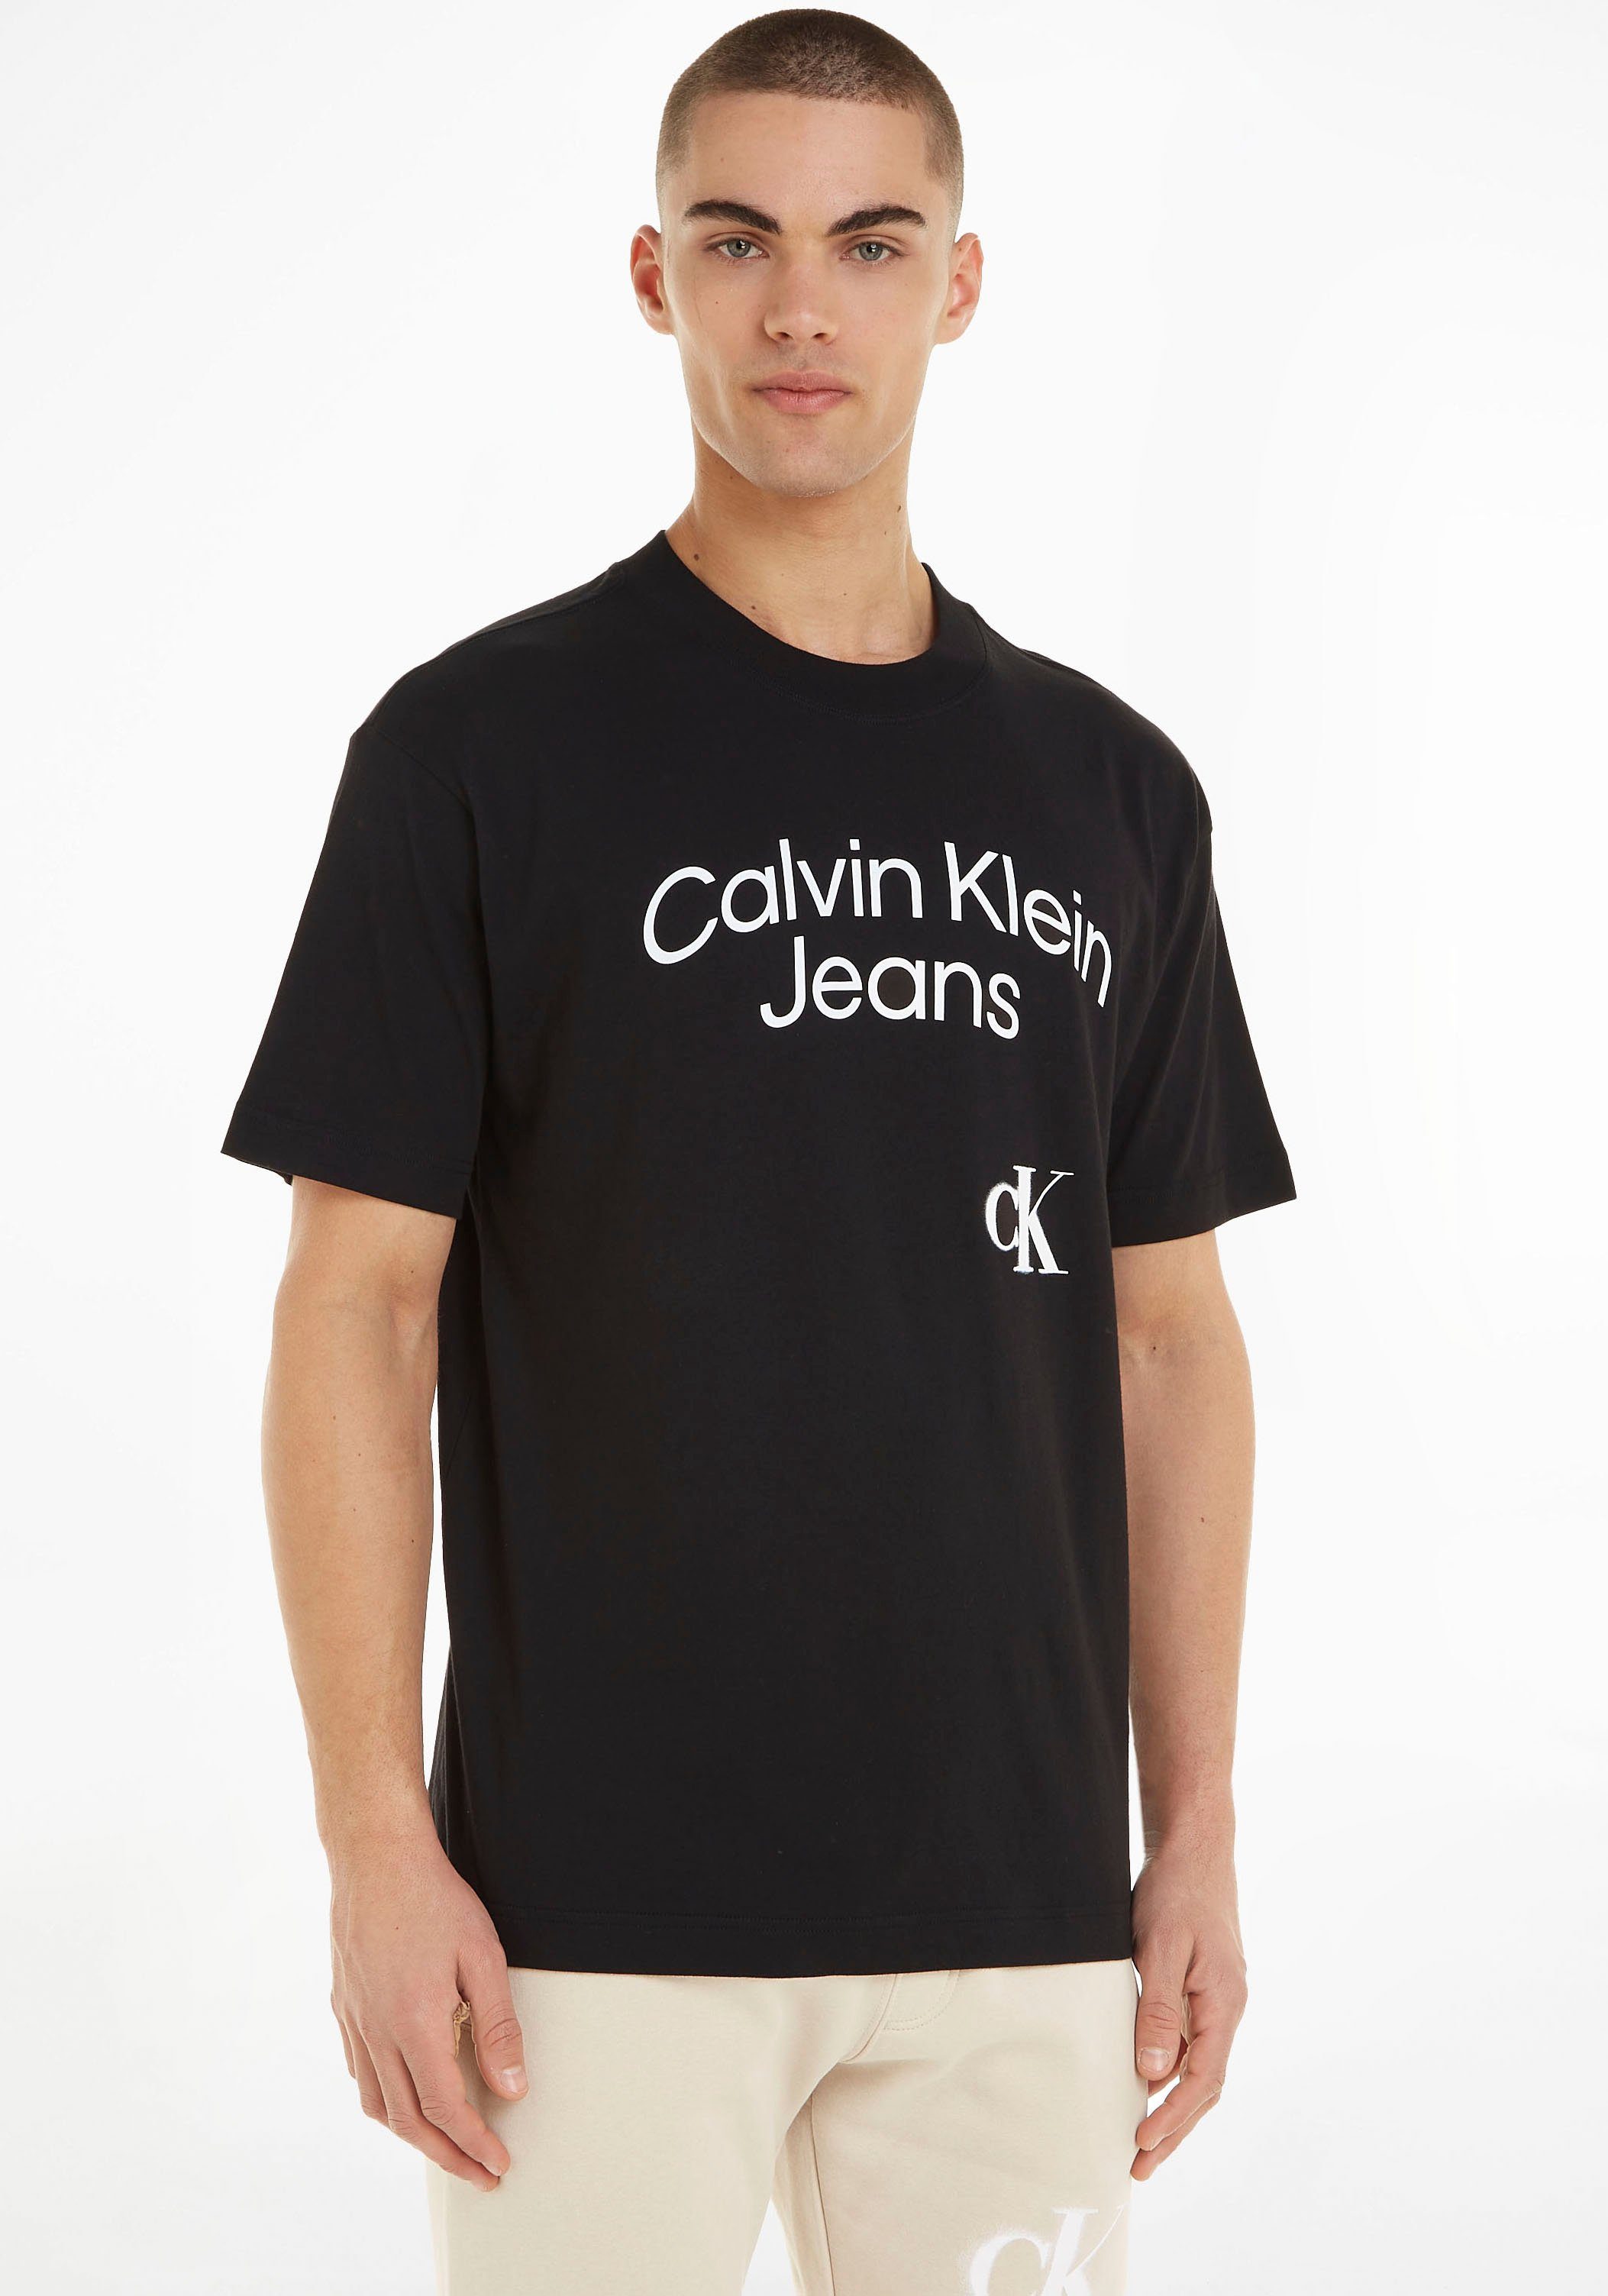 Logoschriftzug, Jeans T-Shirt mit von Klein Calvin Klein großem Calvin T-Shirt Jeans